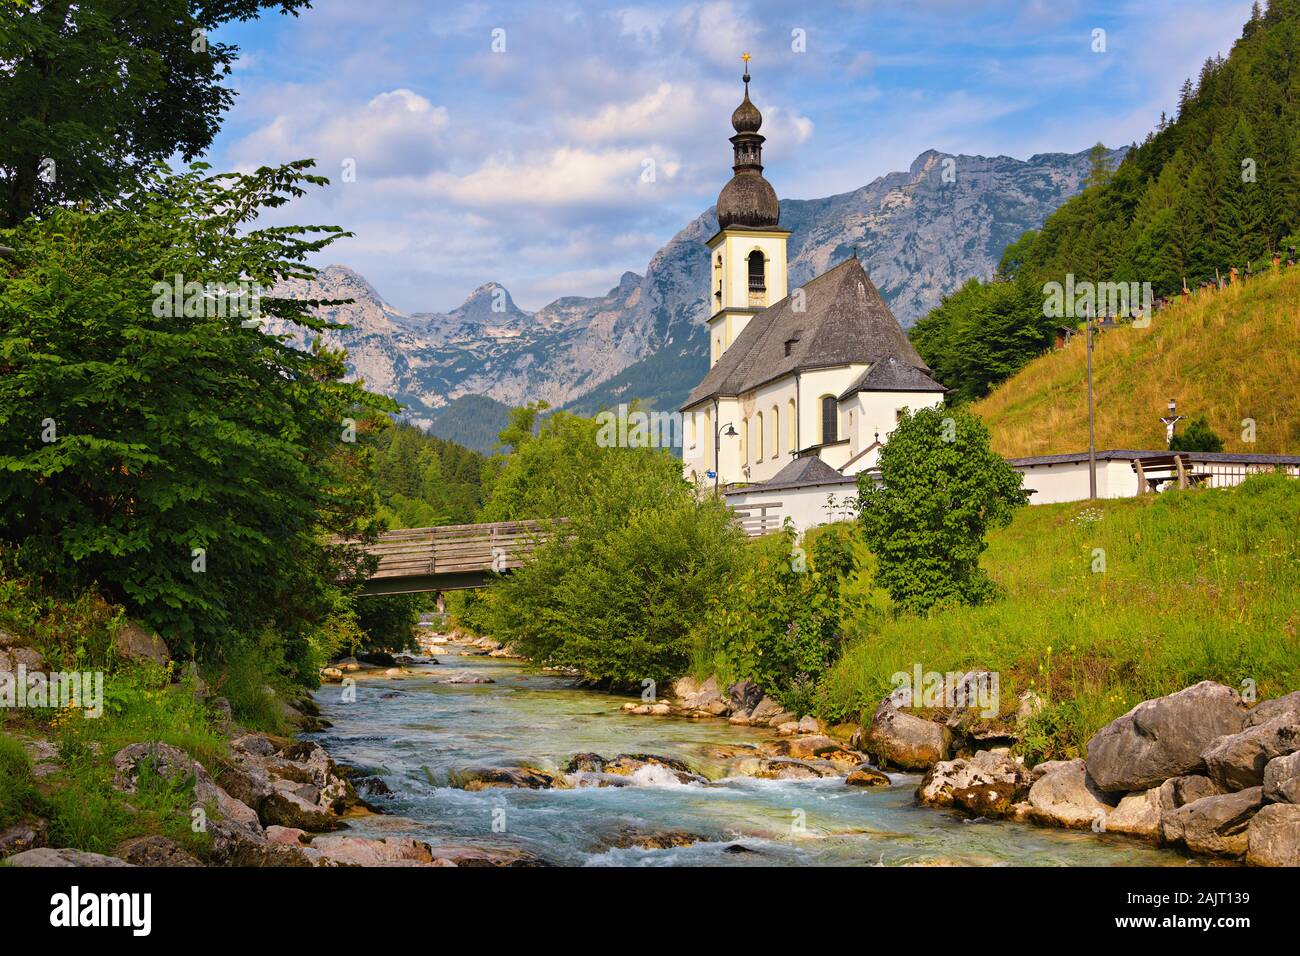 Kirche St. Sebastian in eine Landschaft mit einem Bergbach und Alpen in Ramsau bei Berchtesgaden im Berchtesgadener Land in Bayern, Deutschland. Stockfoto